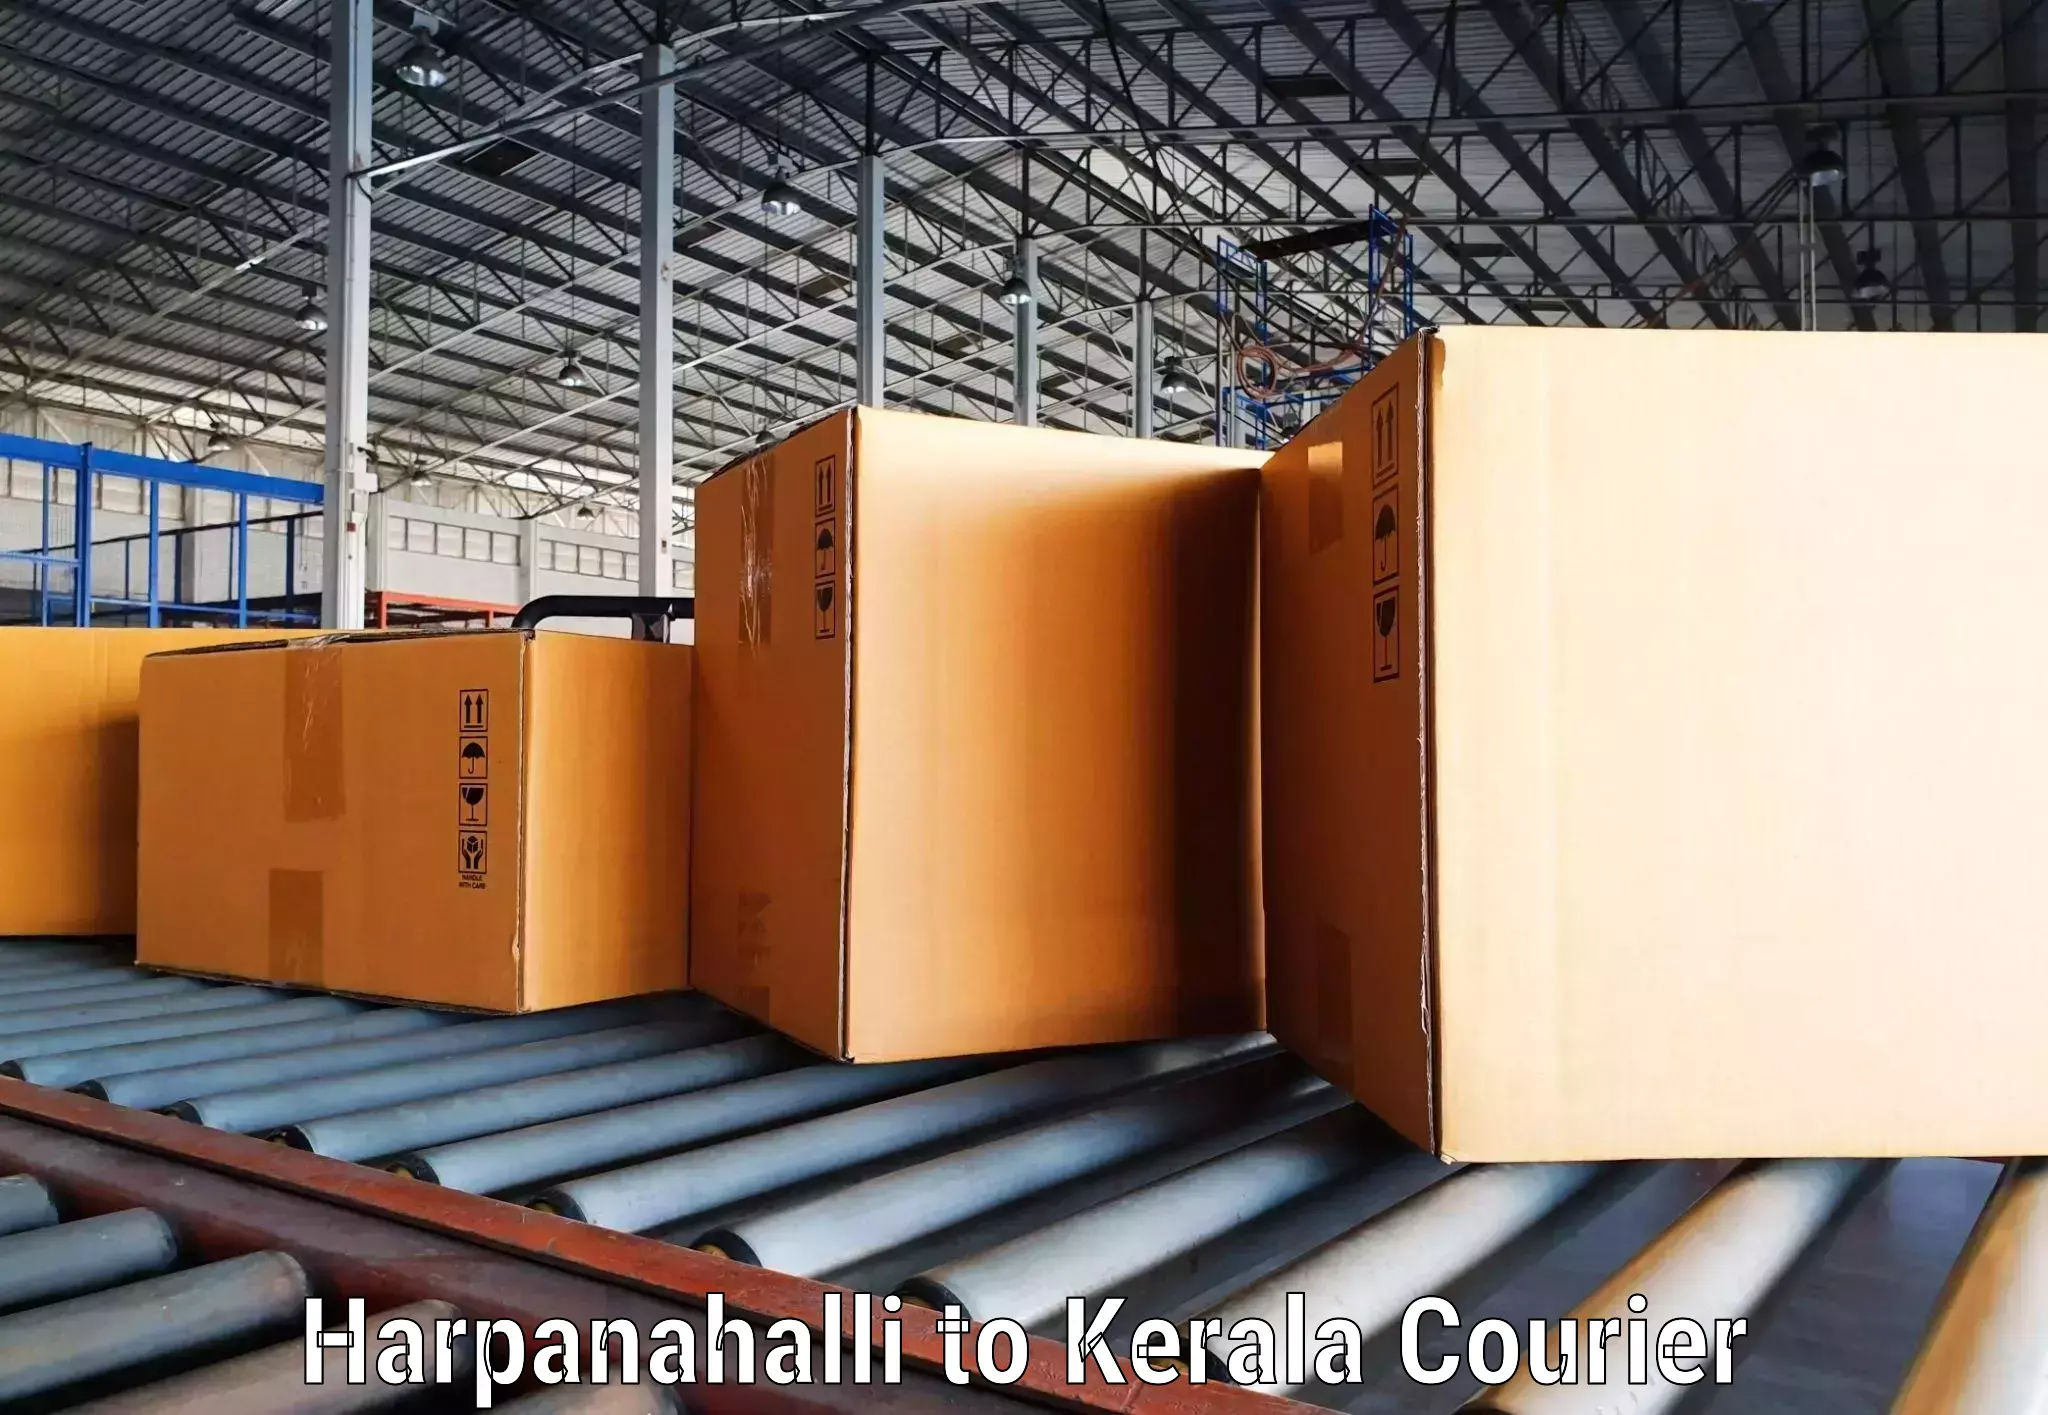 Tracking updates Harpanahalli to Kalluvathukkal